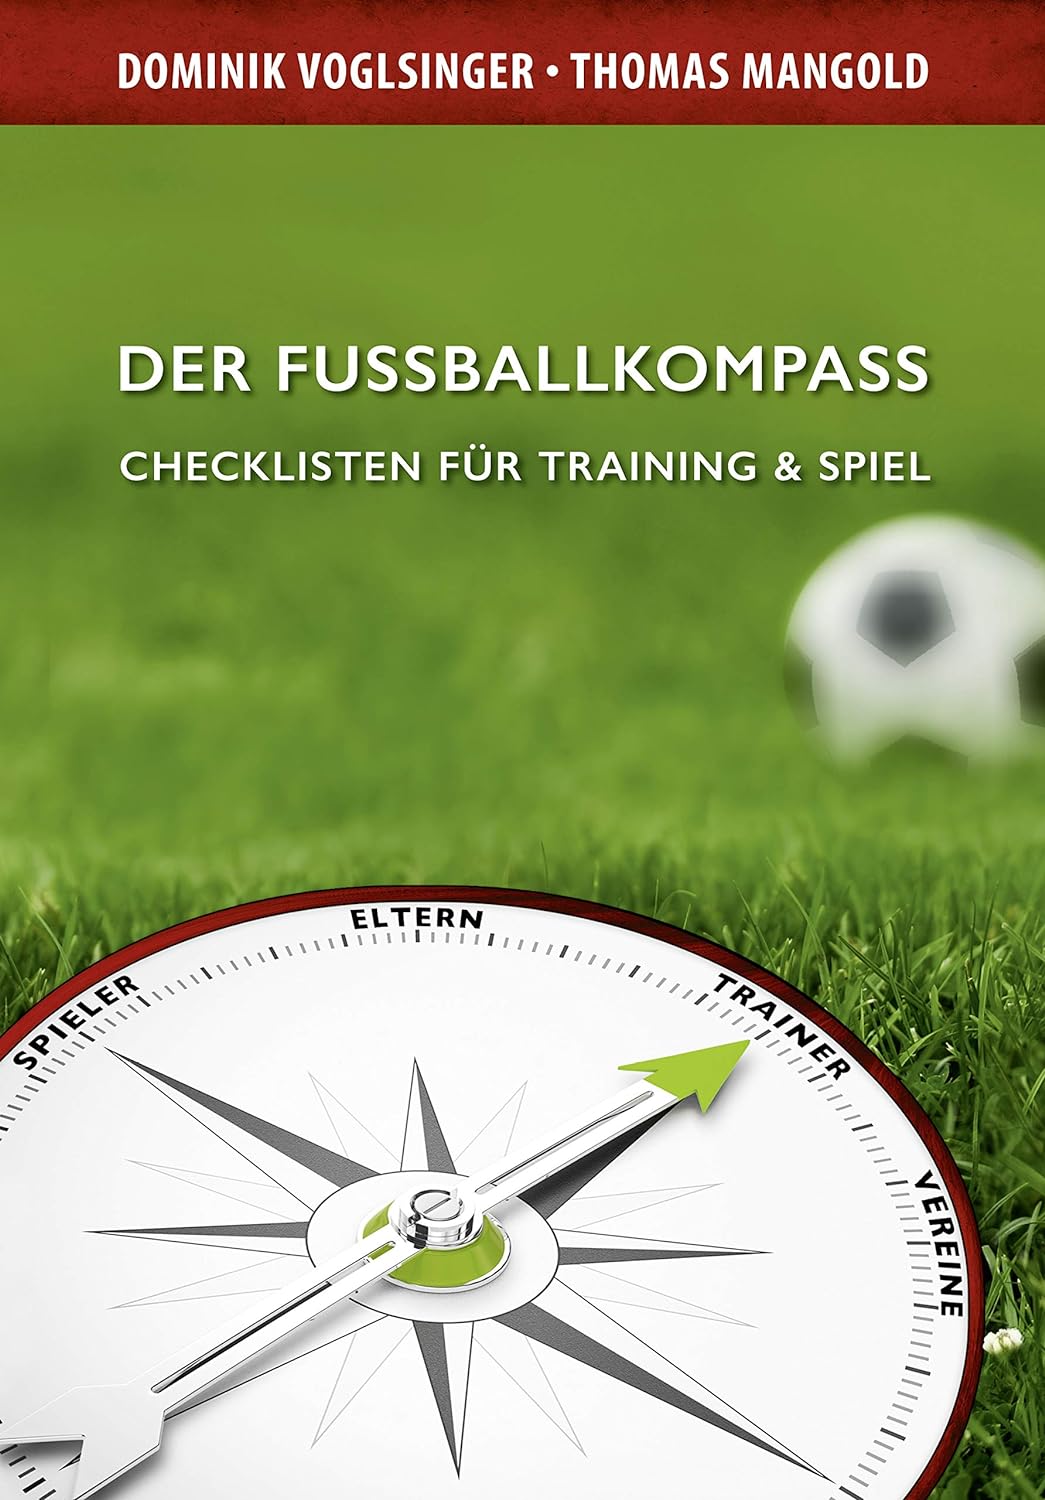 Buch - Der Fußballkompass - Dominik Voglsinger